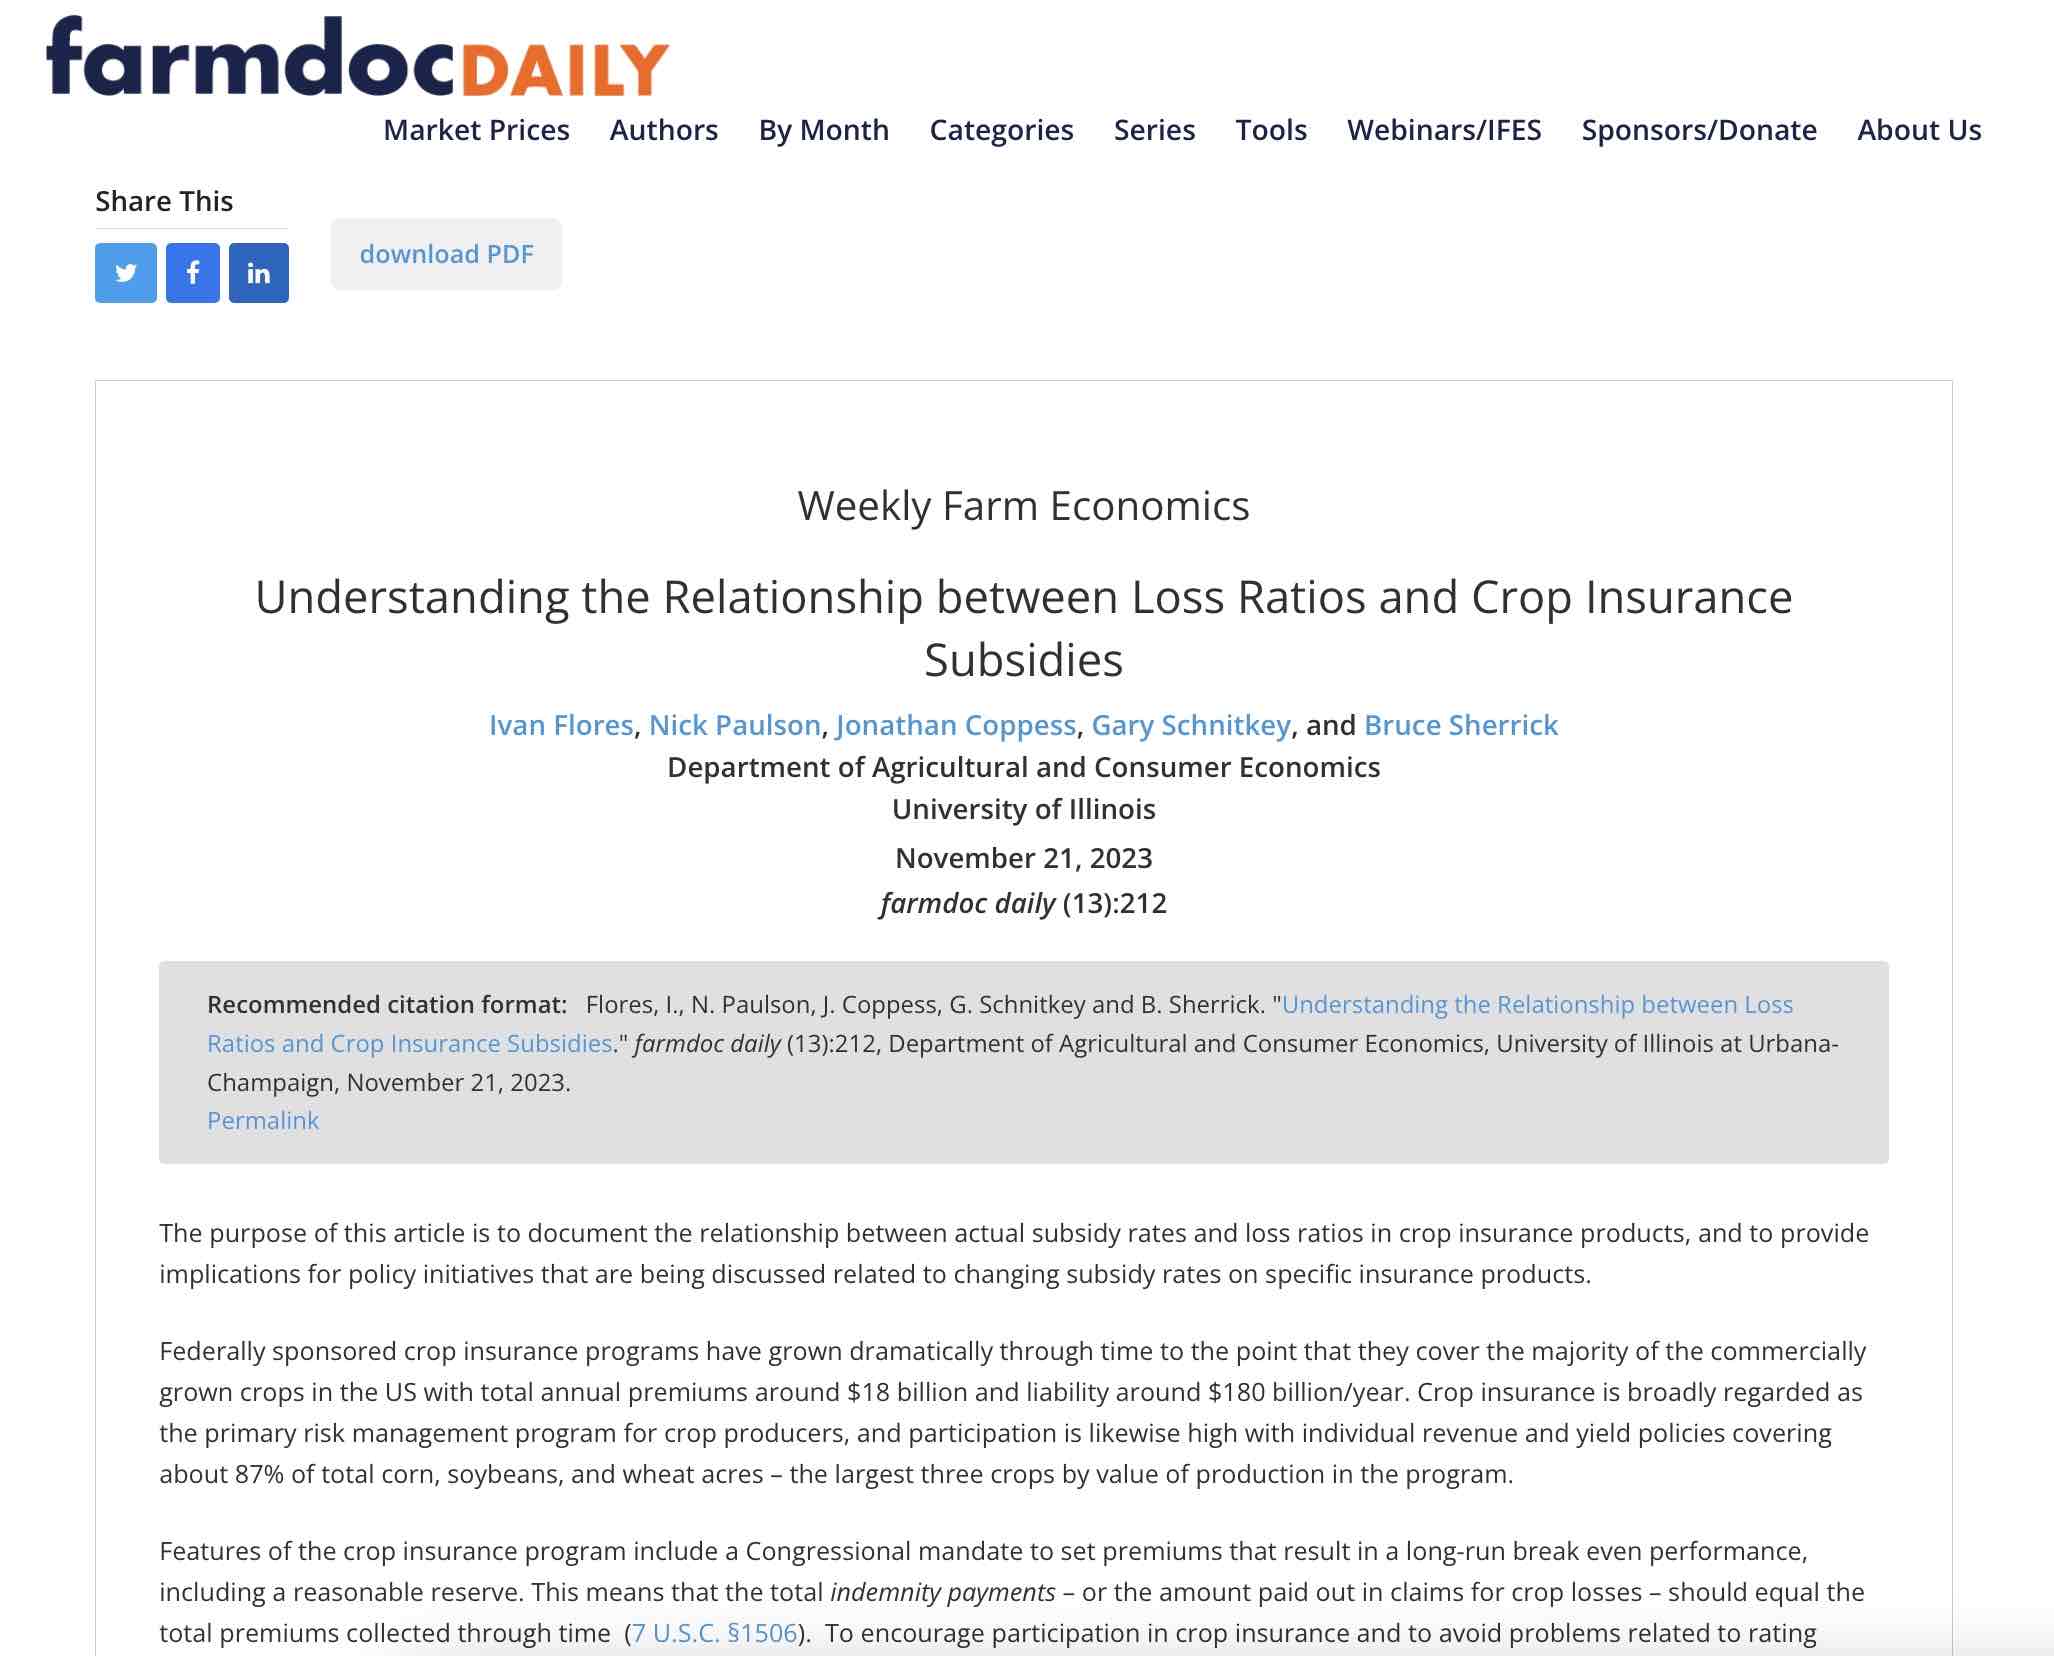 Ivan Flores publication on Crop Insurance ratings